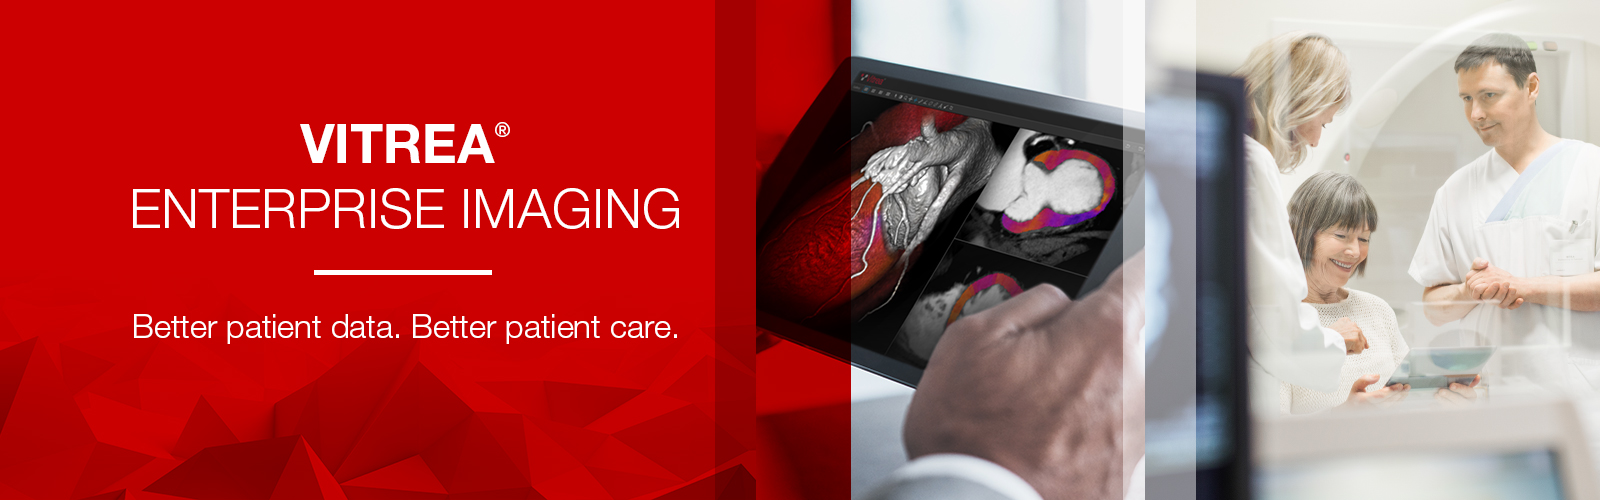 Vitrea Enterprise Imaging - Better patient data. Better patient care.